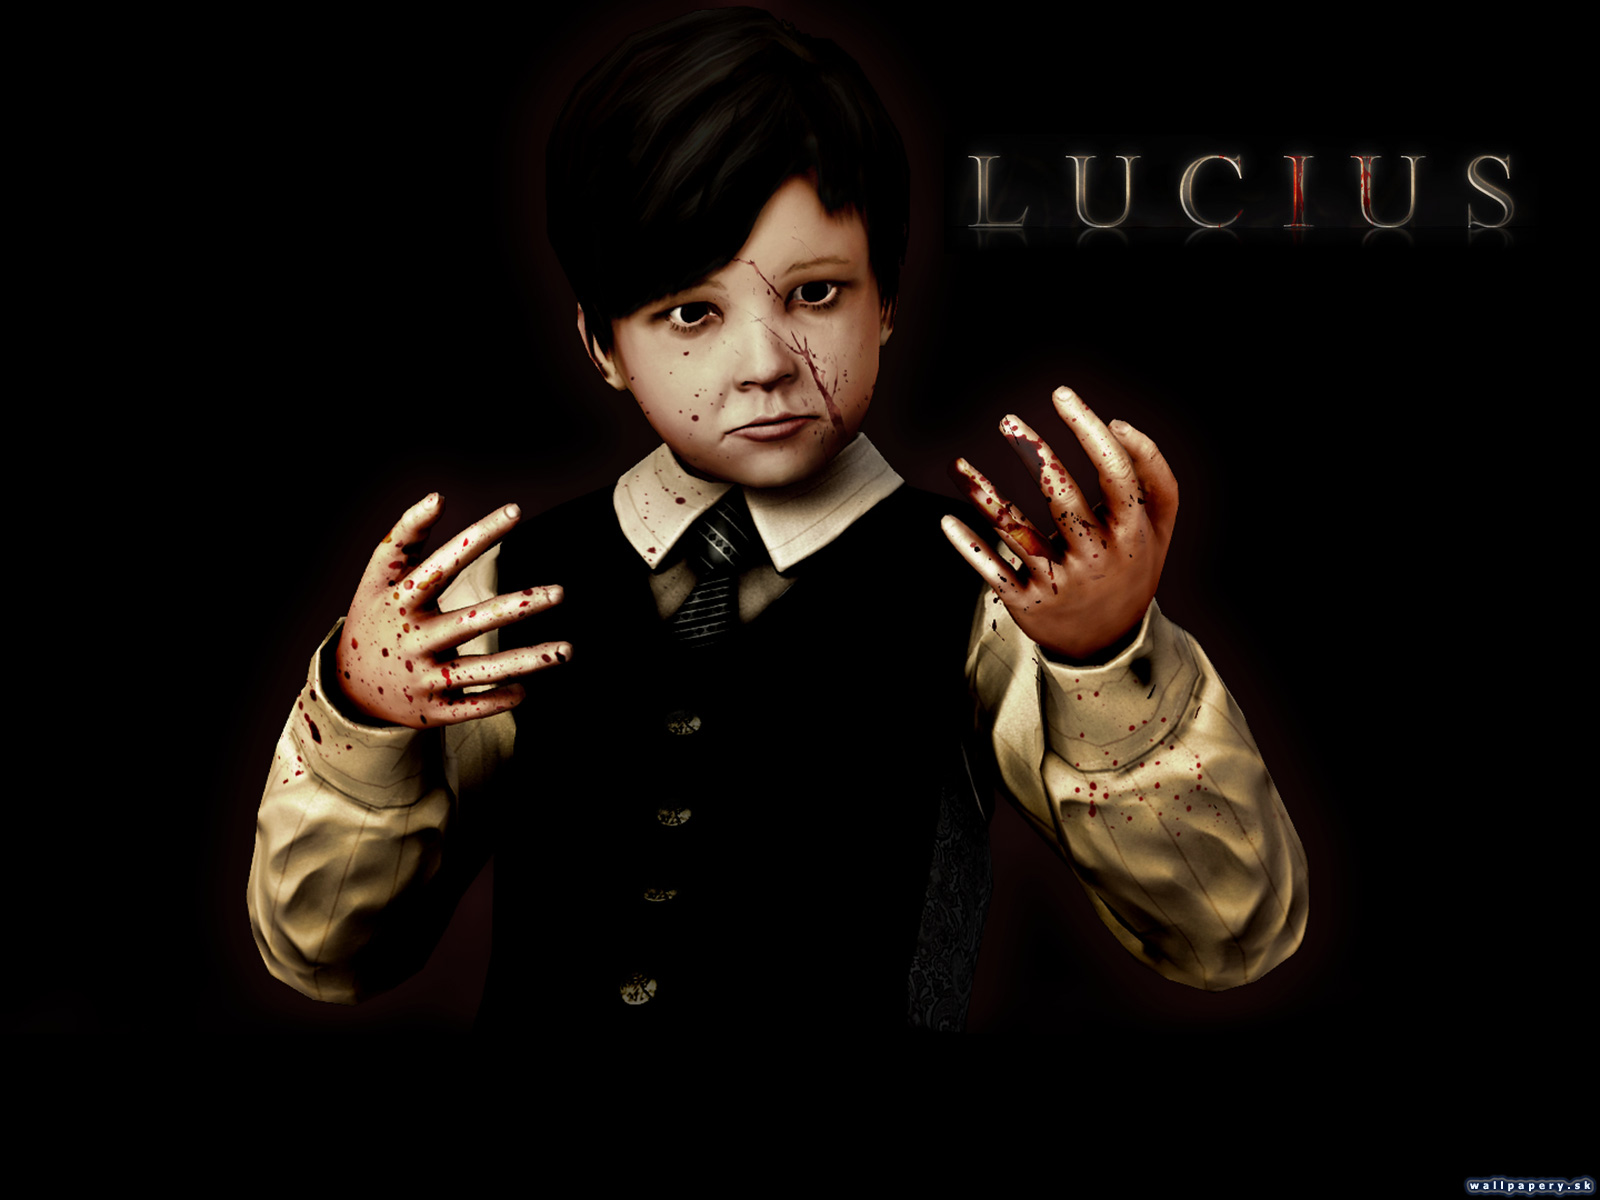 Lucius - wallpaper 2